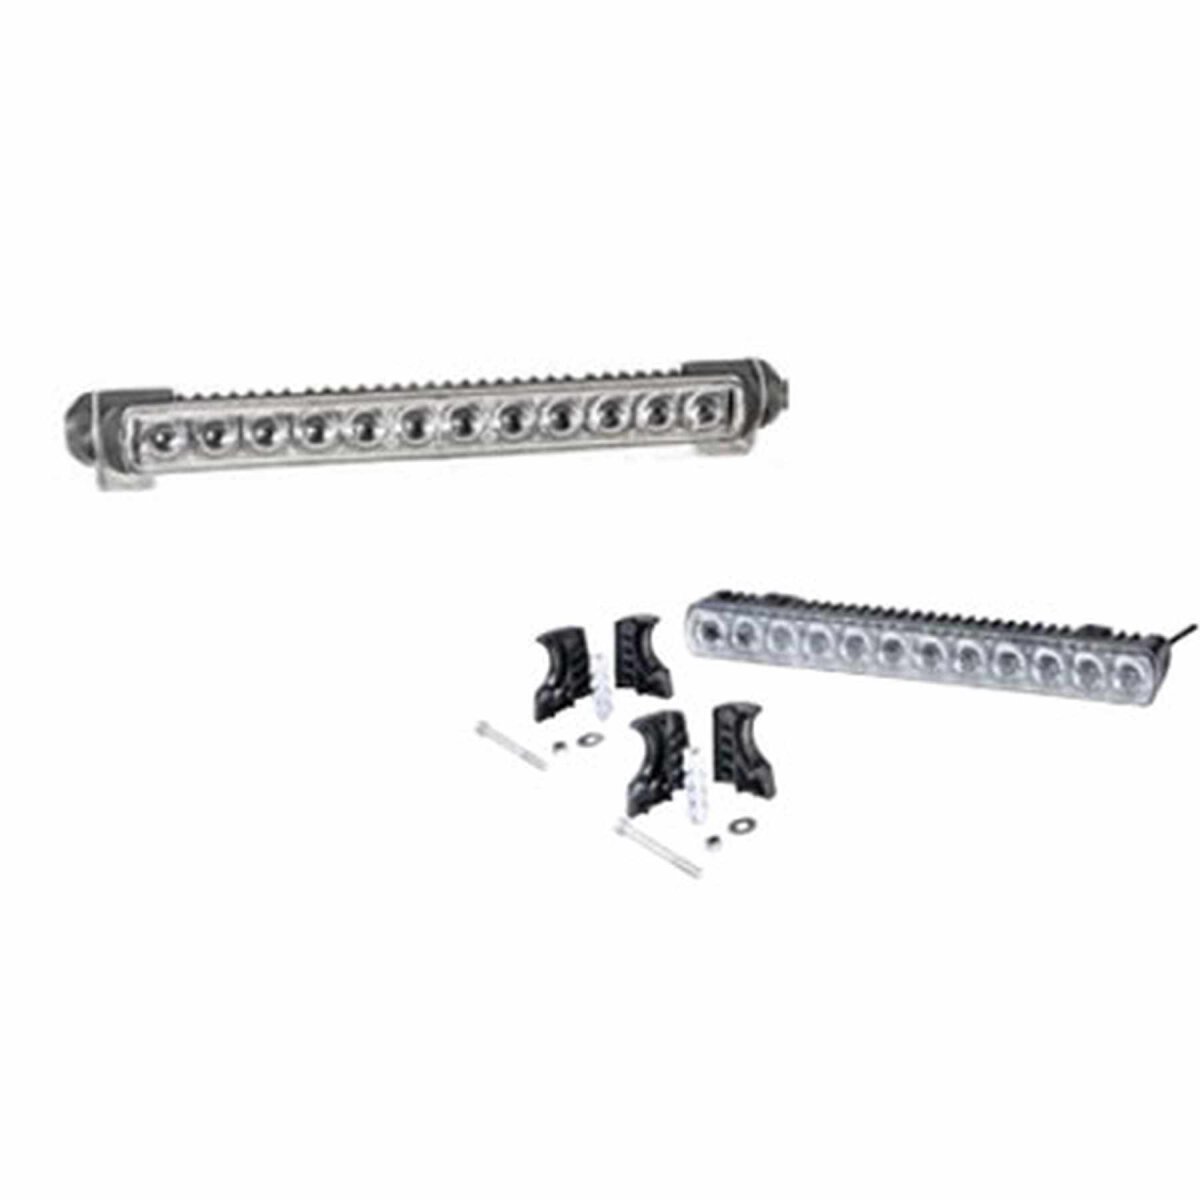 HELLA LED-Fernscheinwerfer LED Light Bar 350, mit 12 LEDs- 1FJ 958 04,  388,49 €